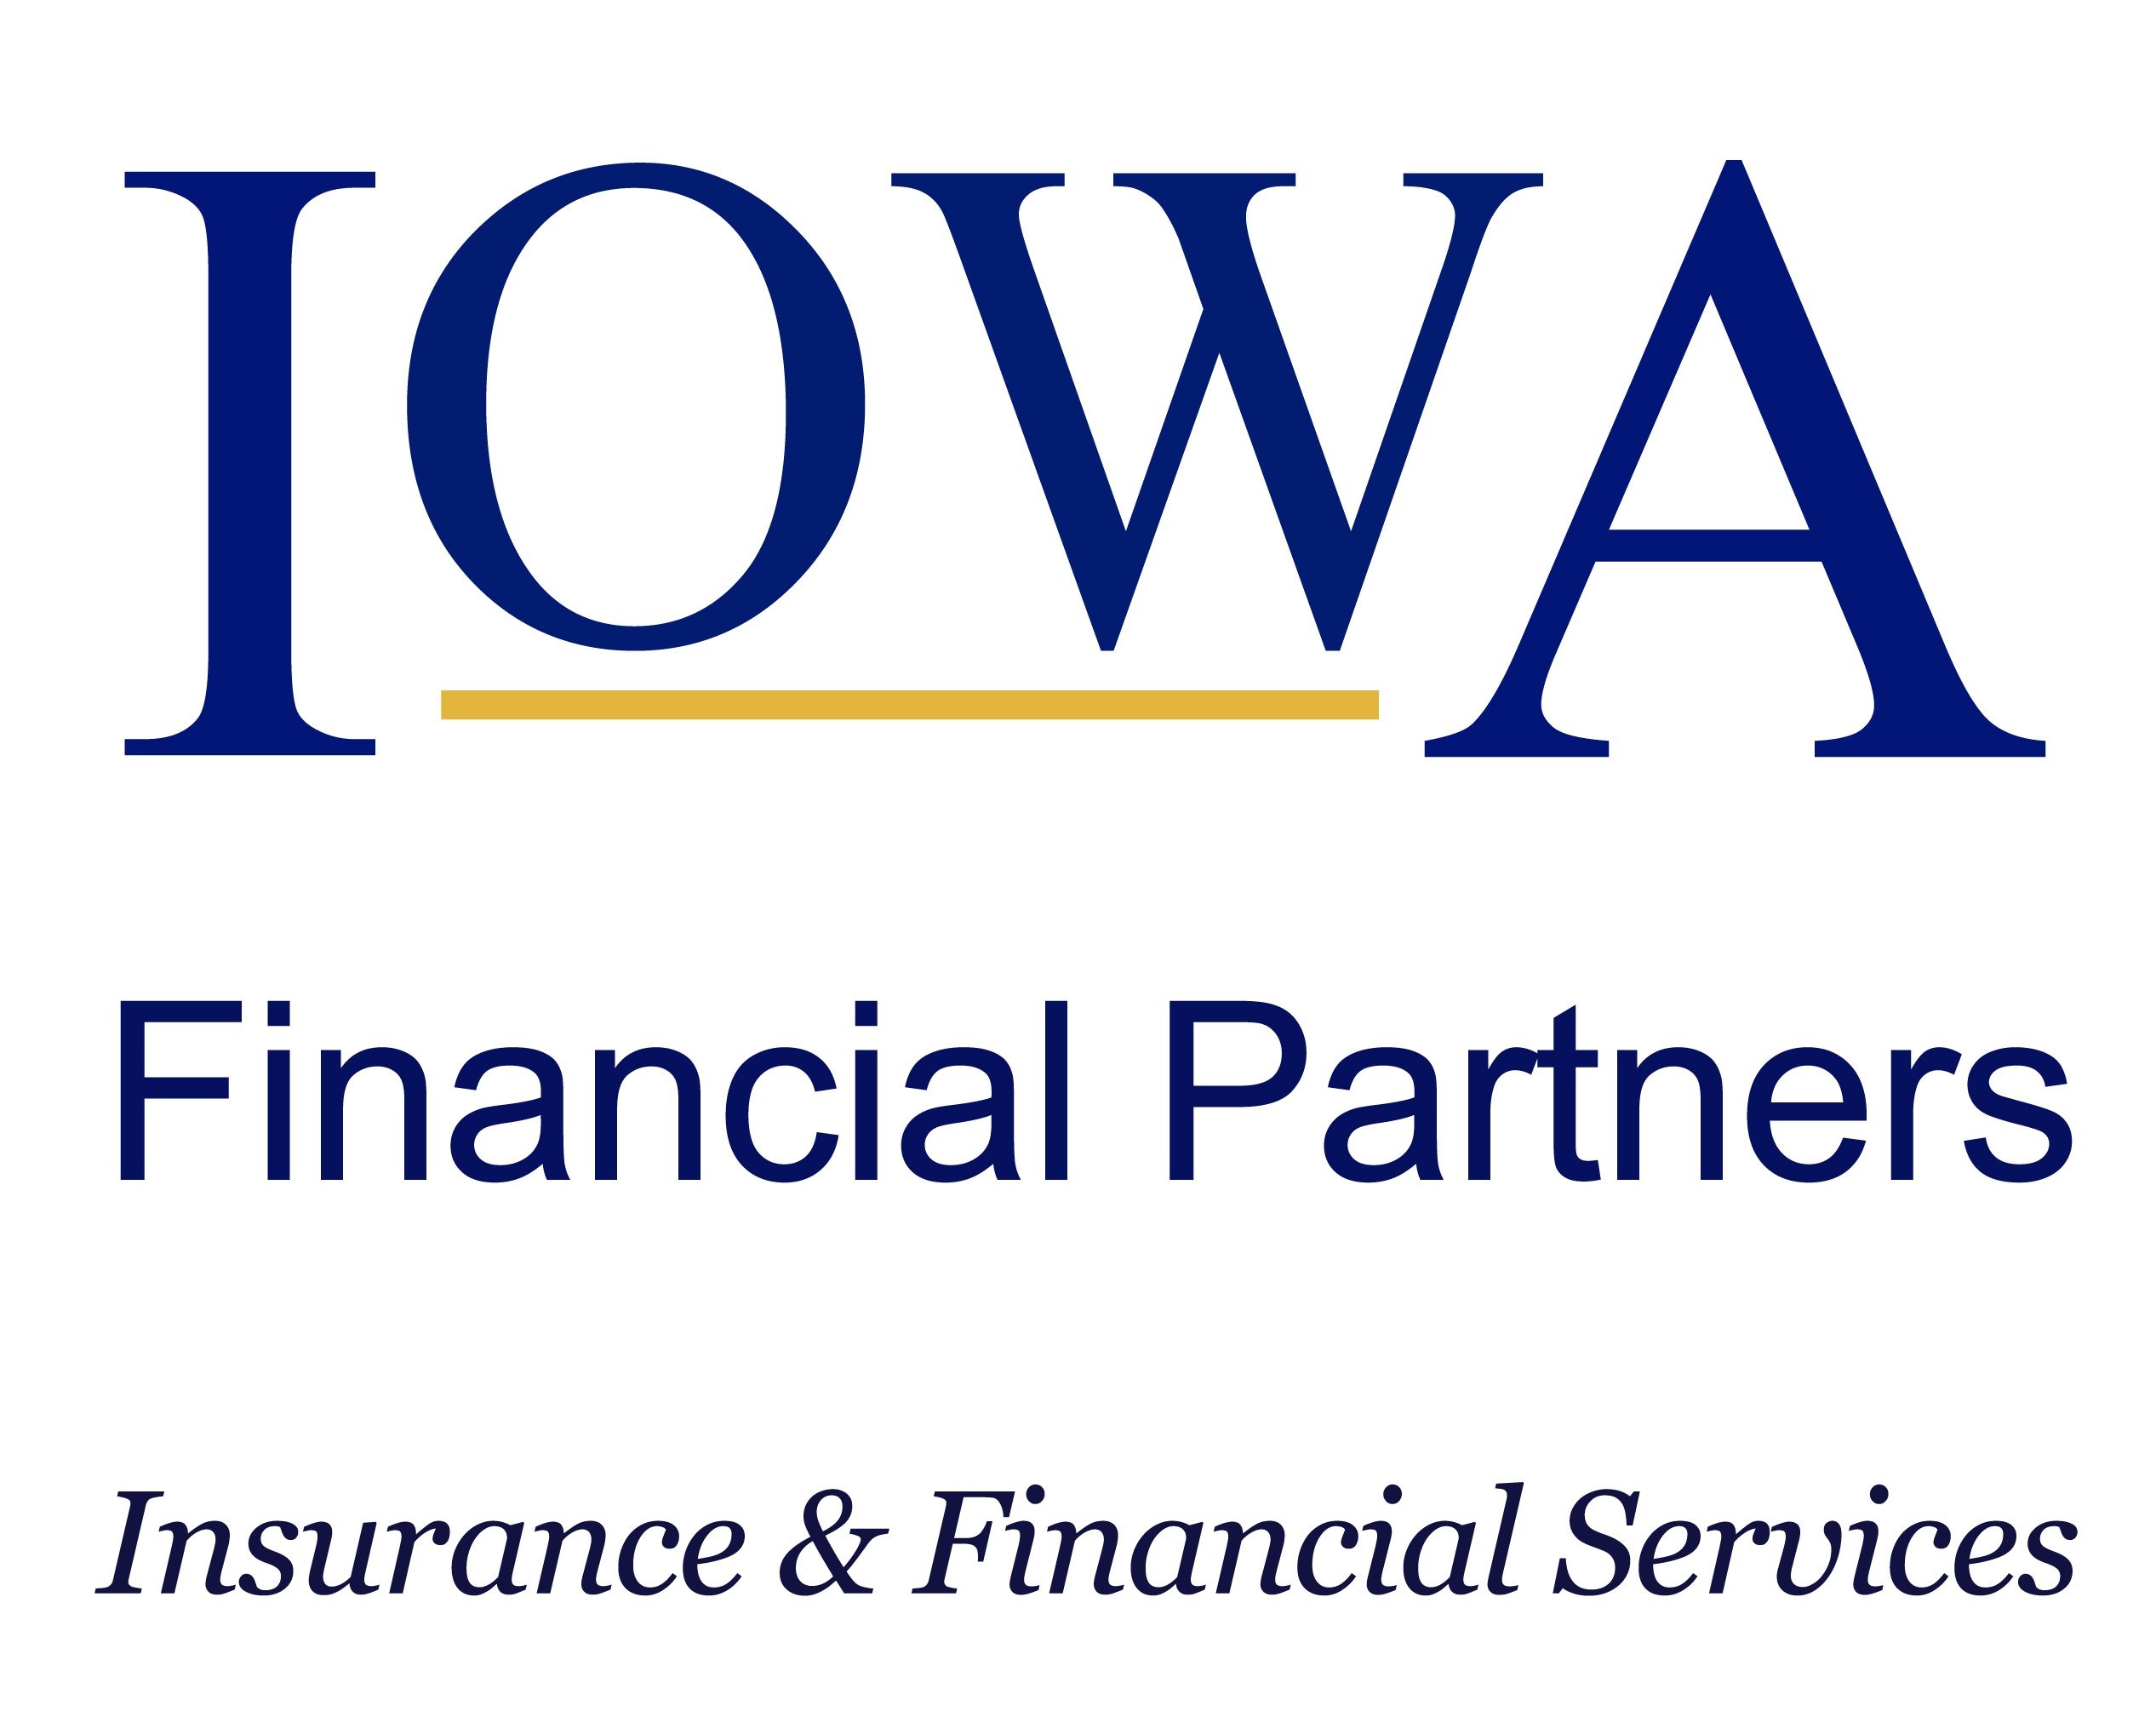 Iowa Financial Partners